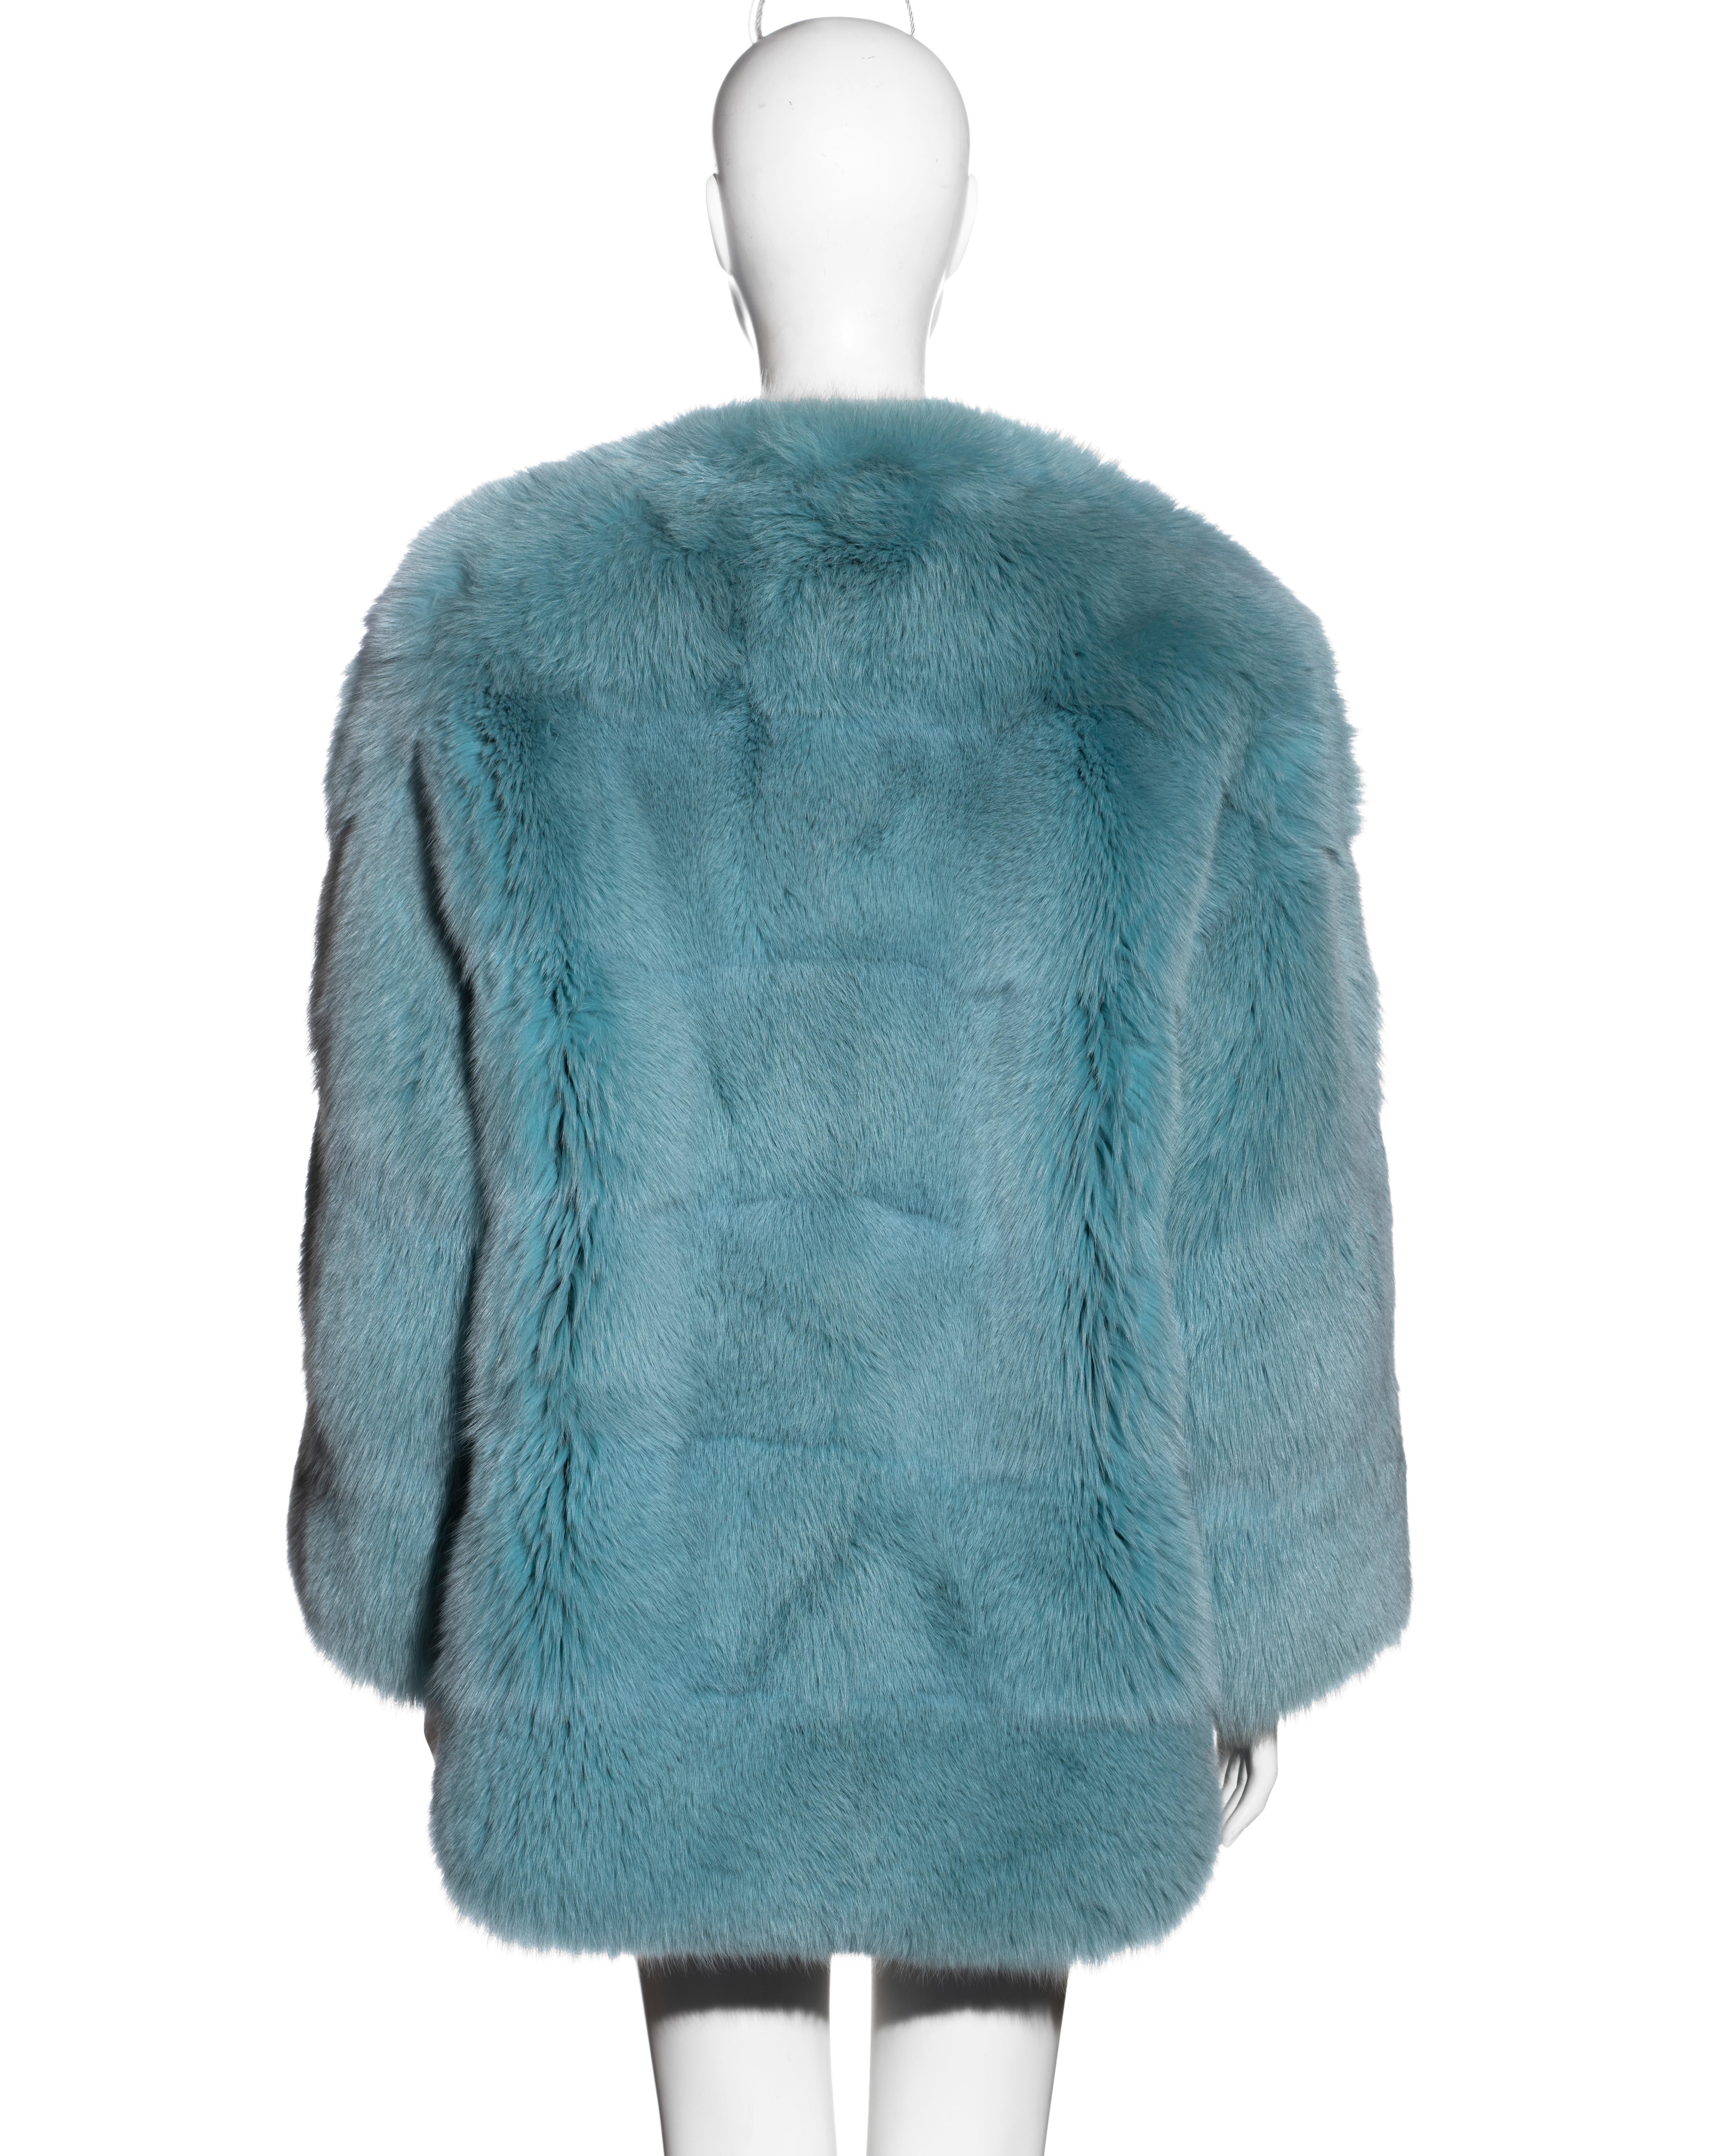 Gucci by Tom Ford aqua blue fox fur coat, fw 1997 1